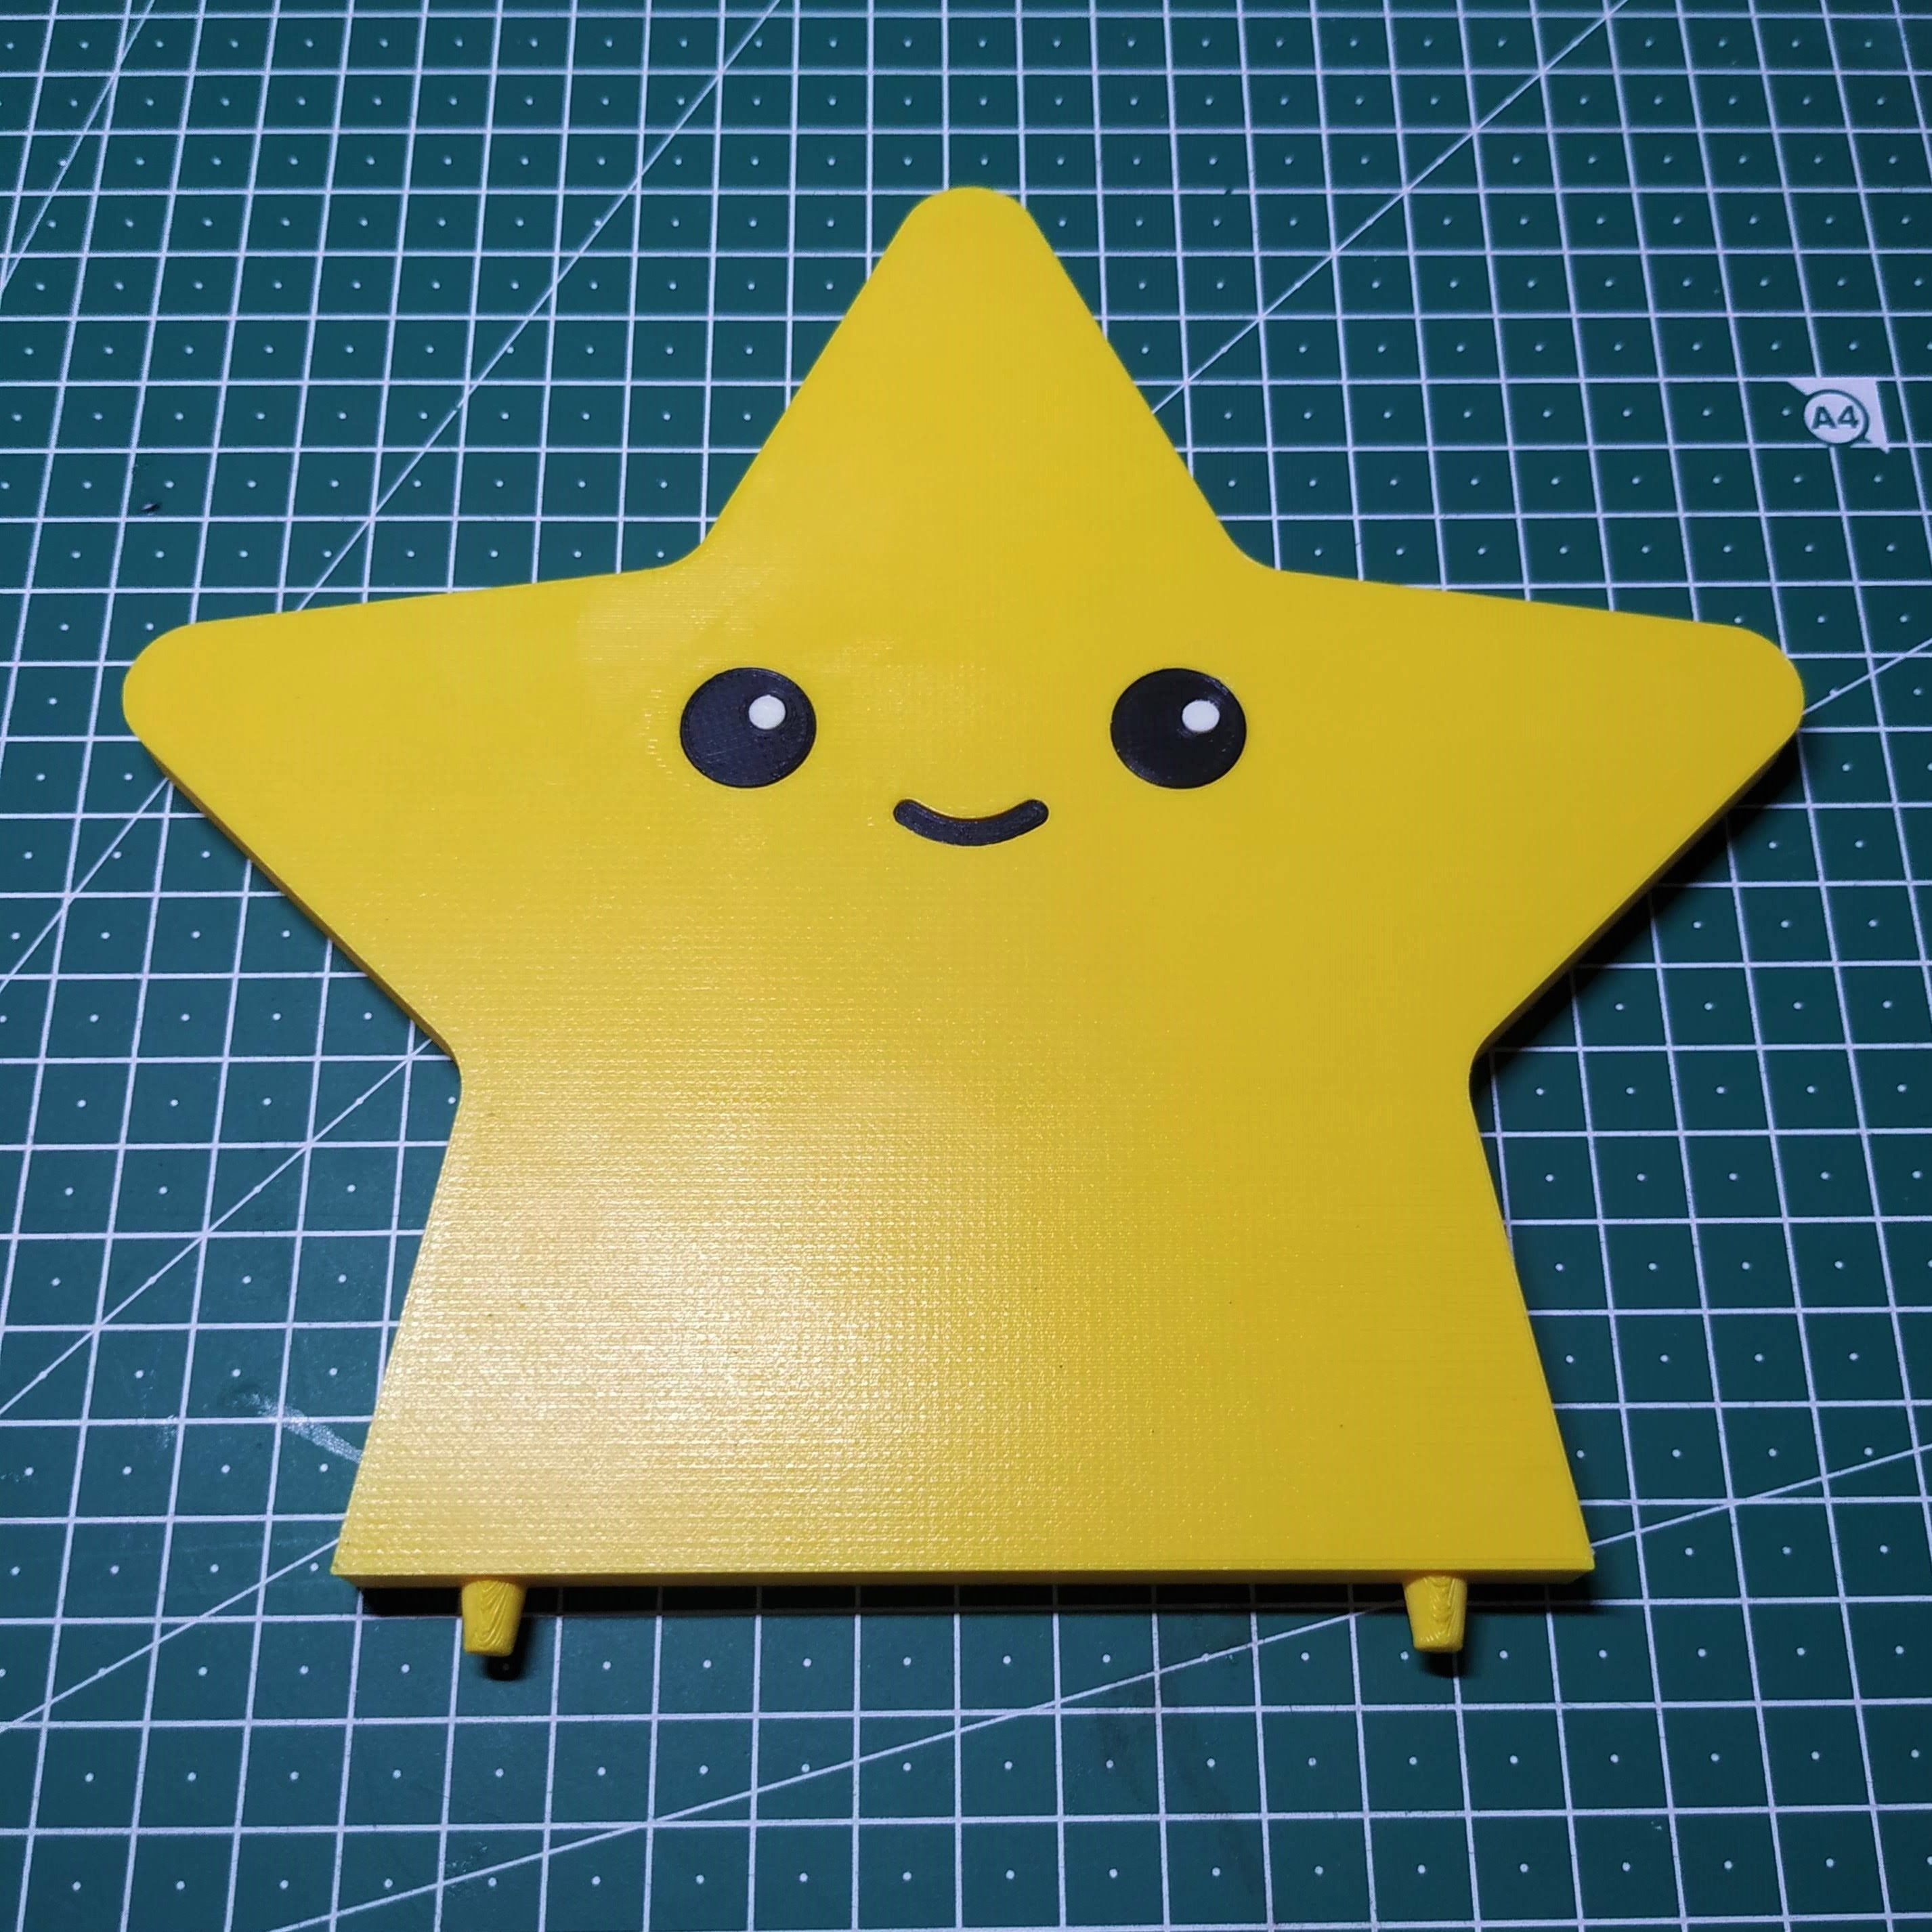 star_top.jpg Archivo Child's star nightlamp・Design para impresora 3D para descargar, filaprim3d